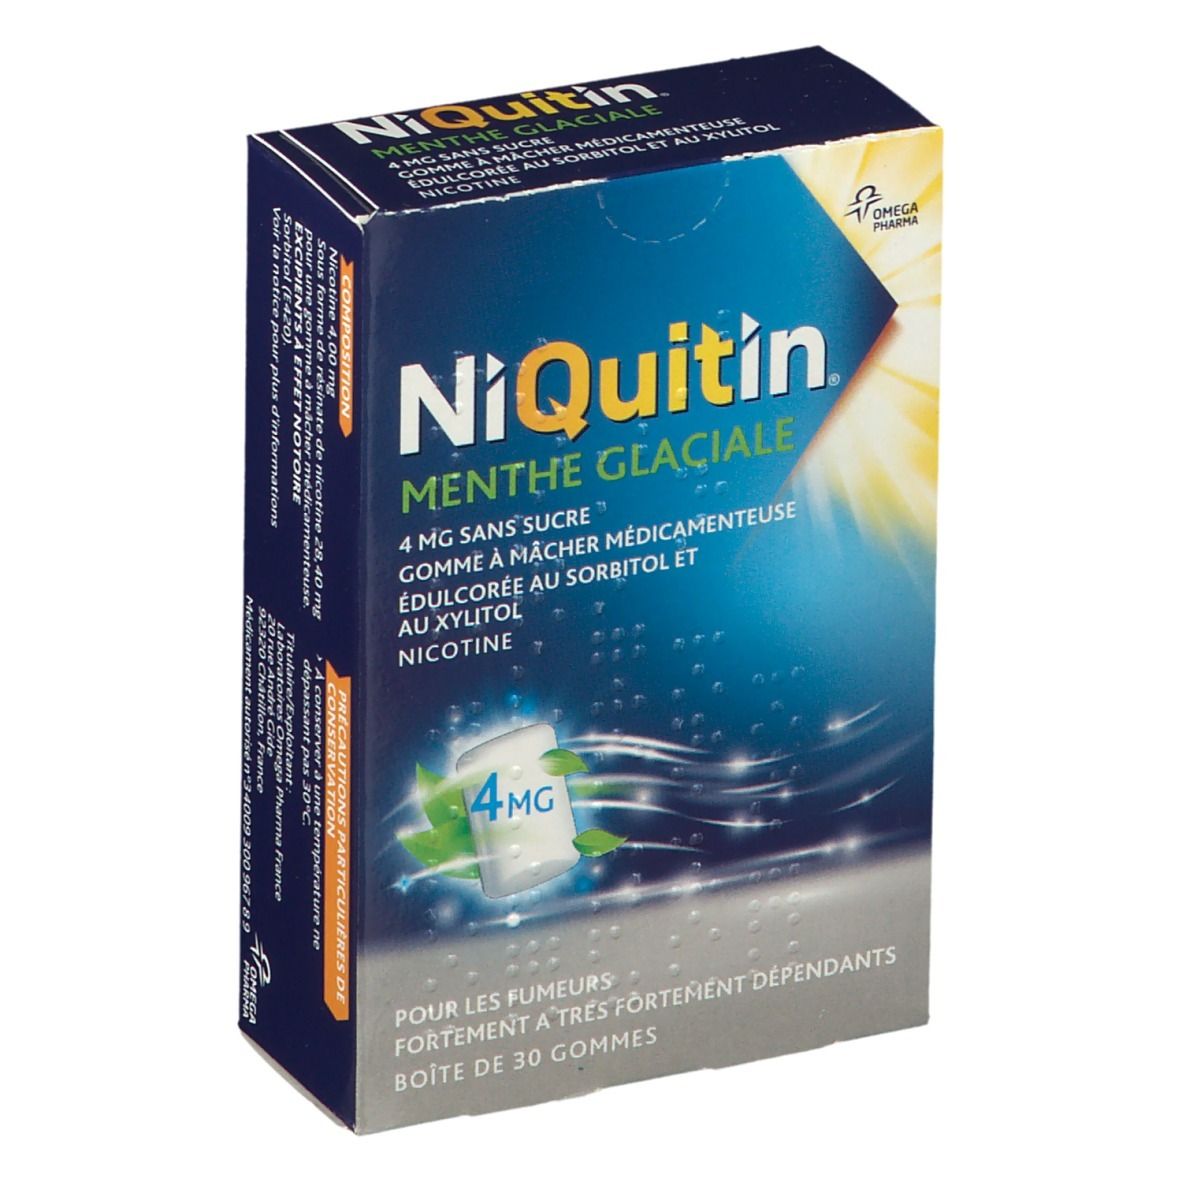 NiQuitin® Menthe Glaciale 4 mg sans sucres